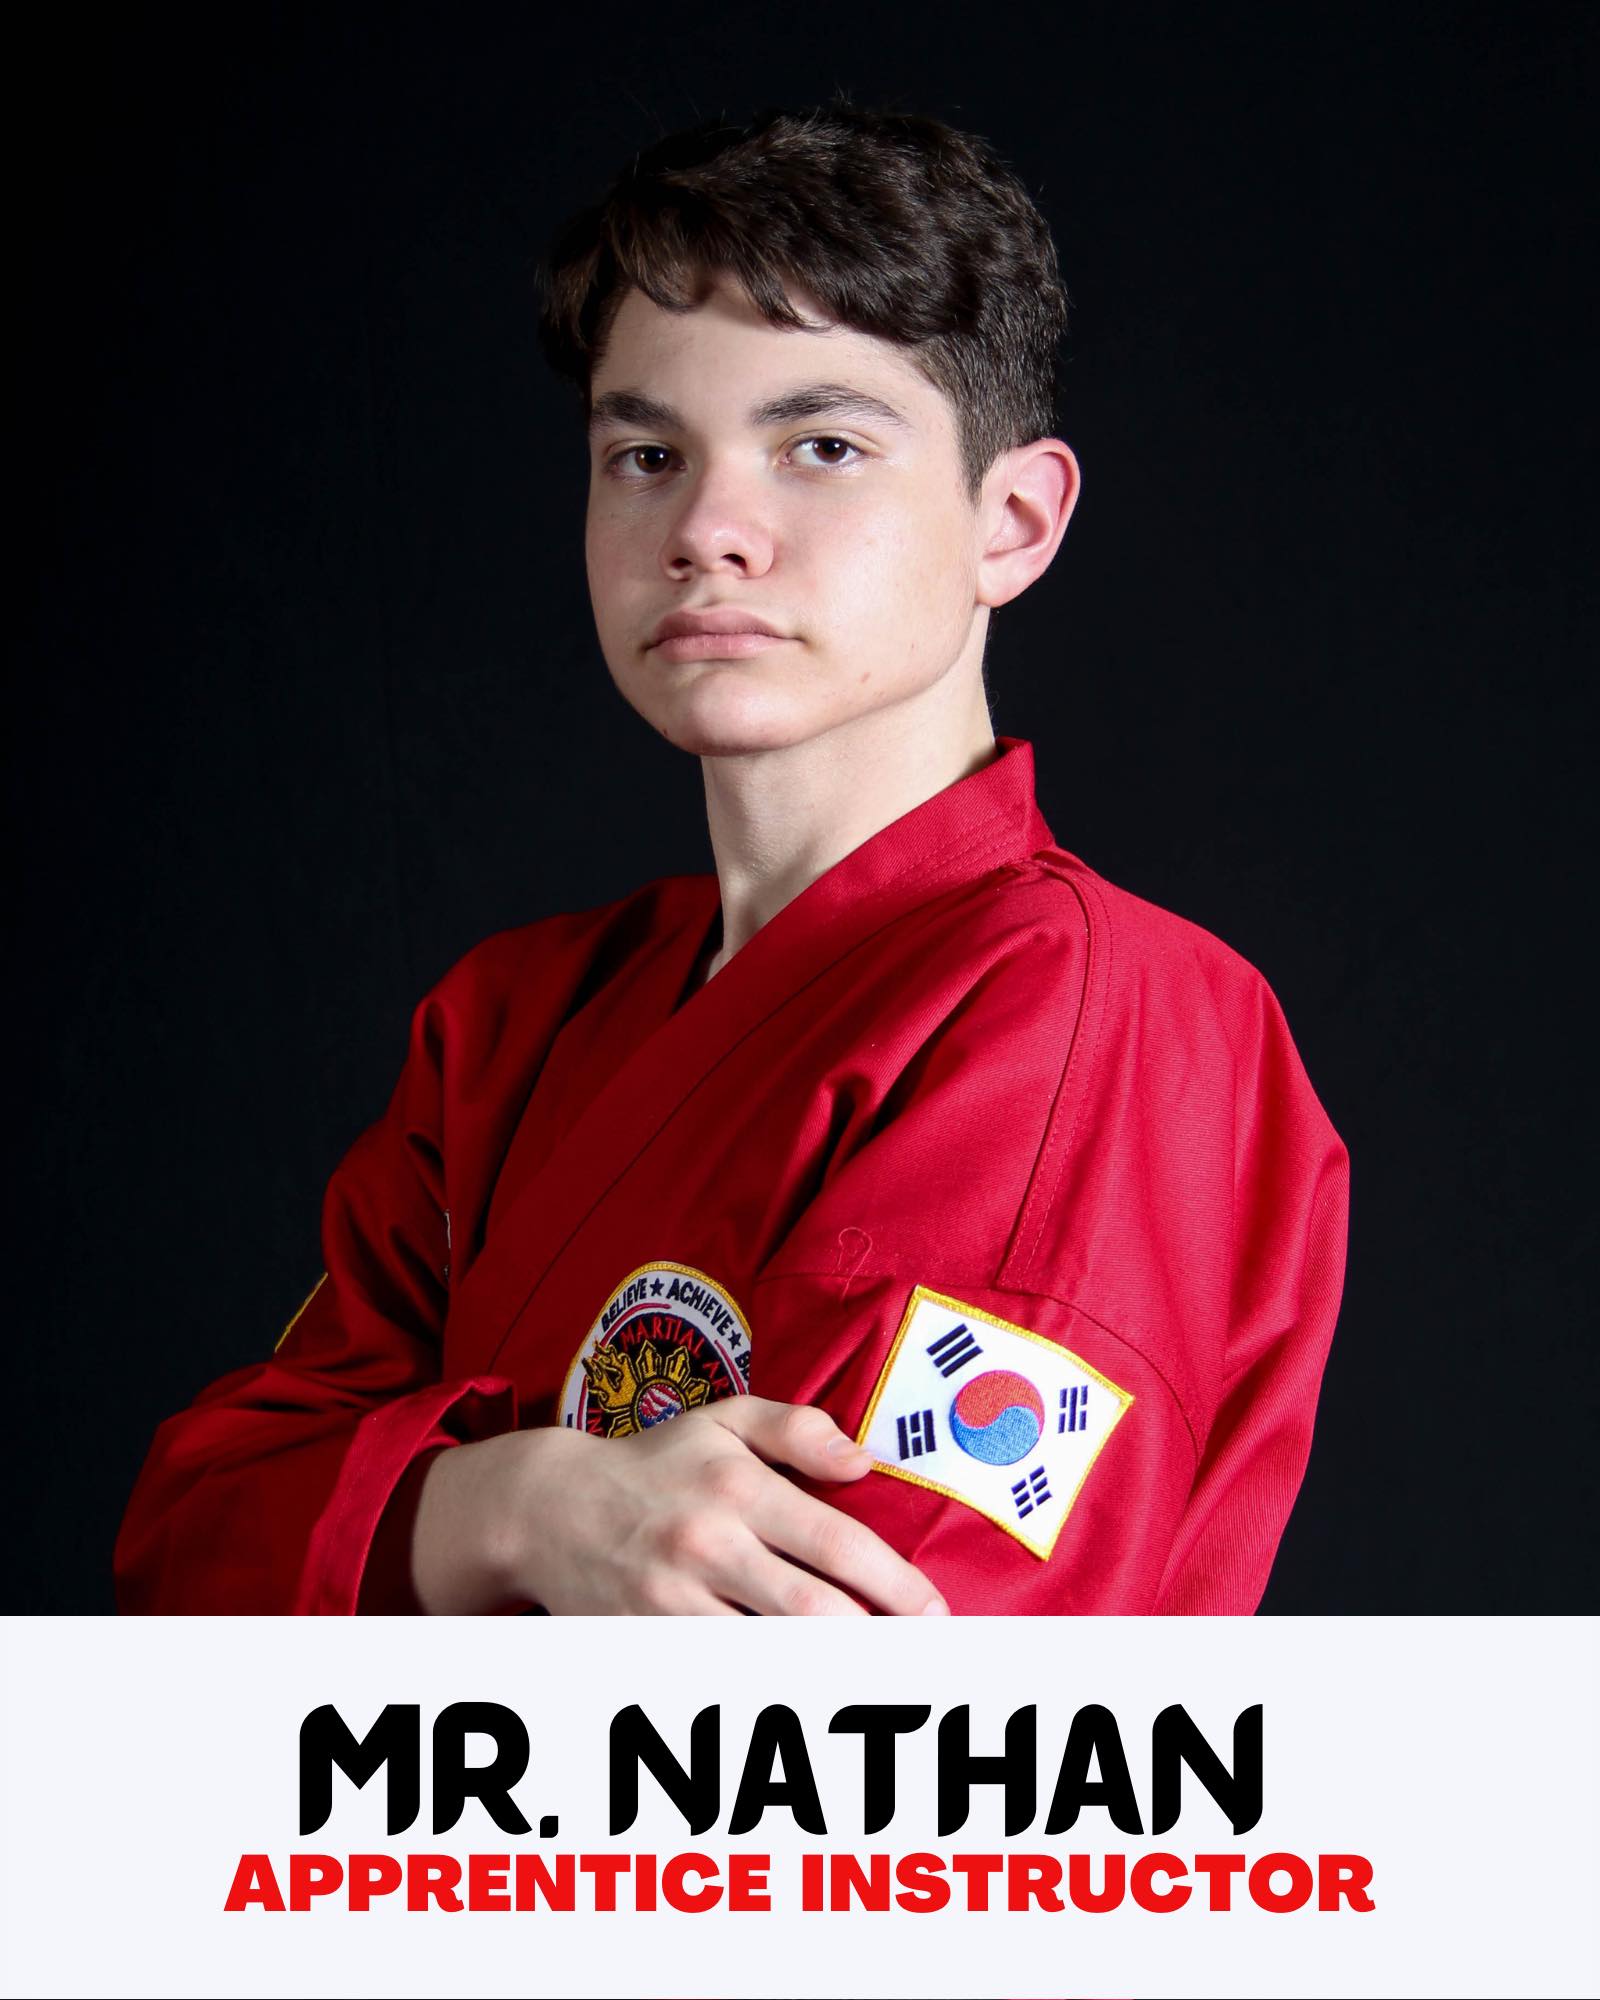 Mr. Nathan